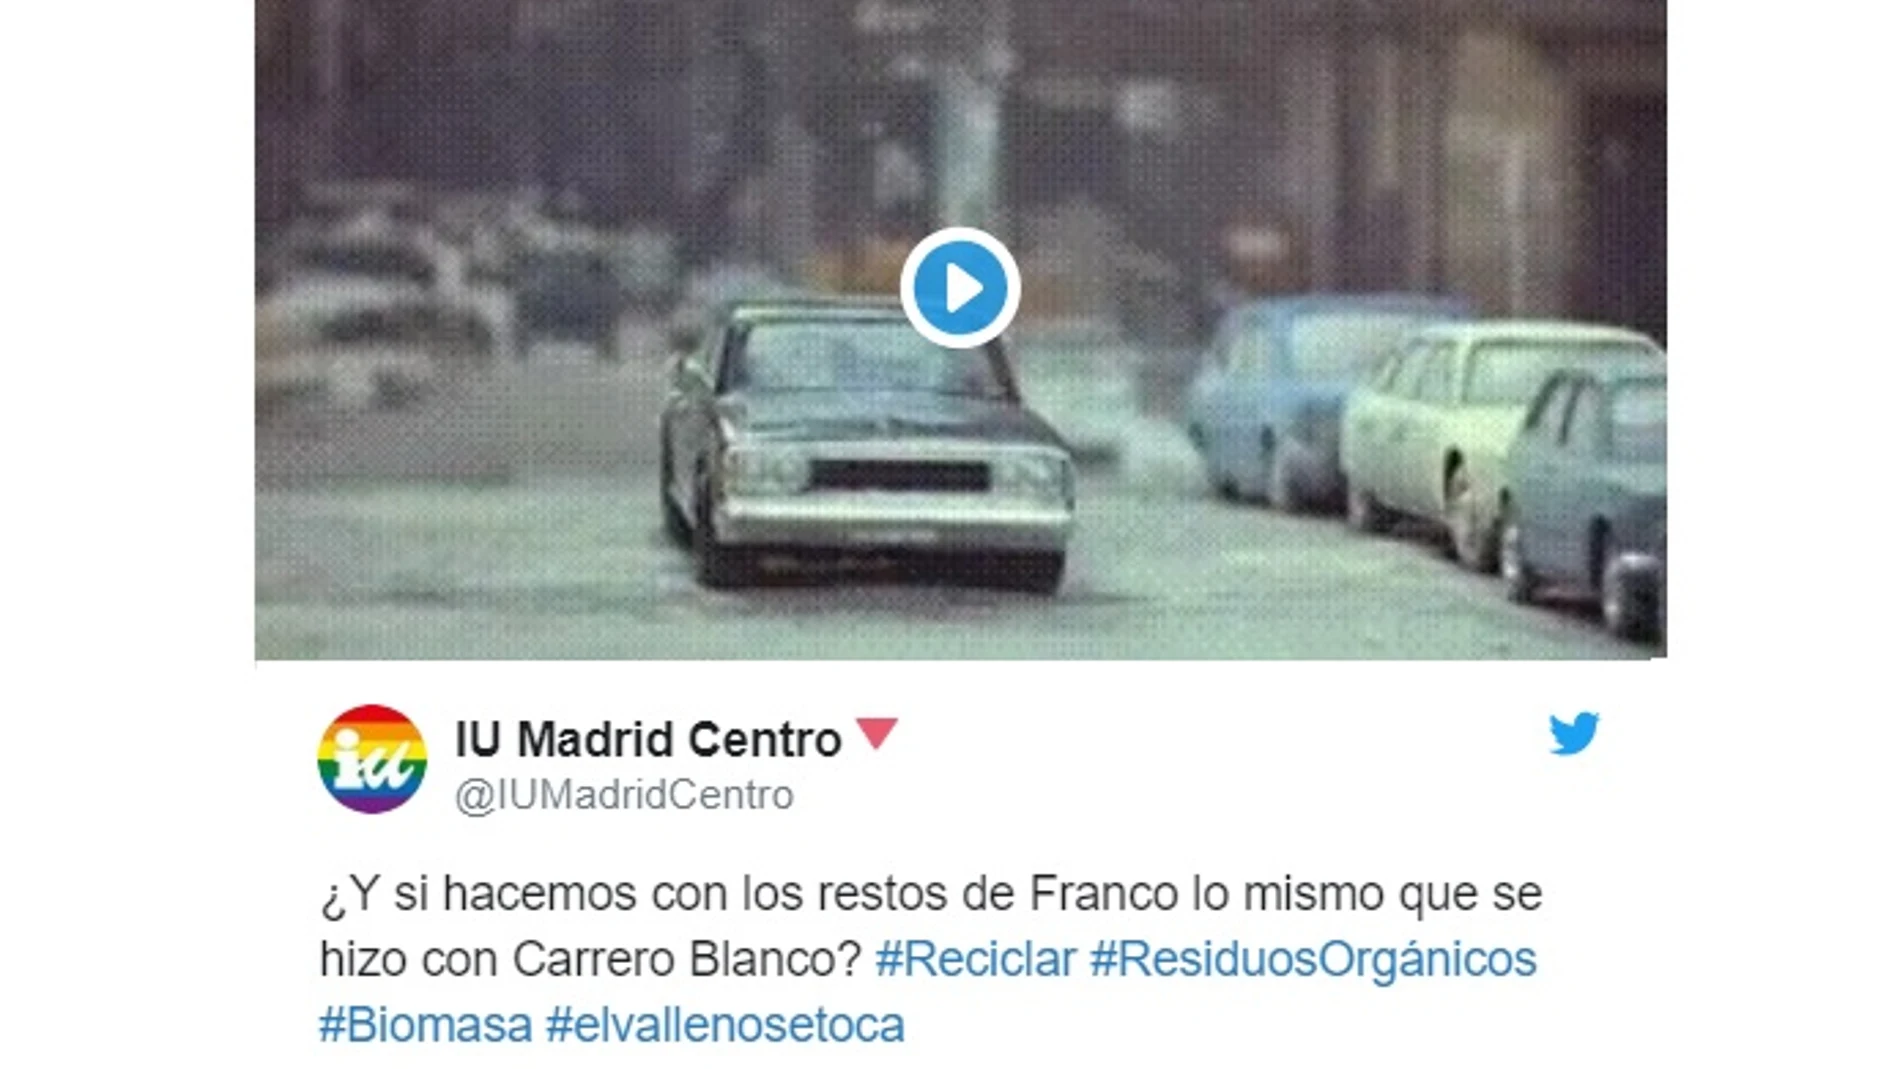 IU propone hacer con los restos de Franco «lo mismo que se hizo con Carrero Blanco»